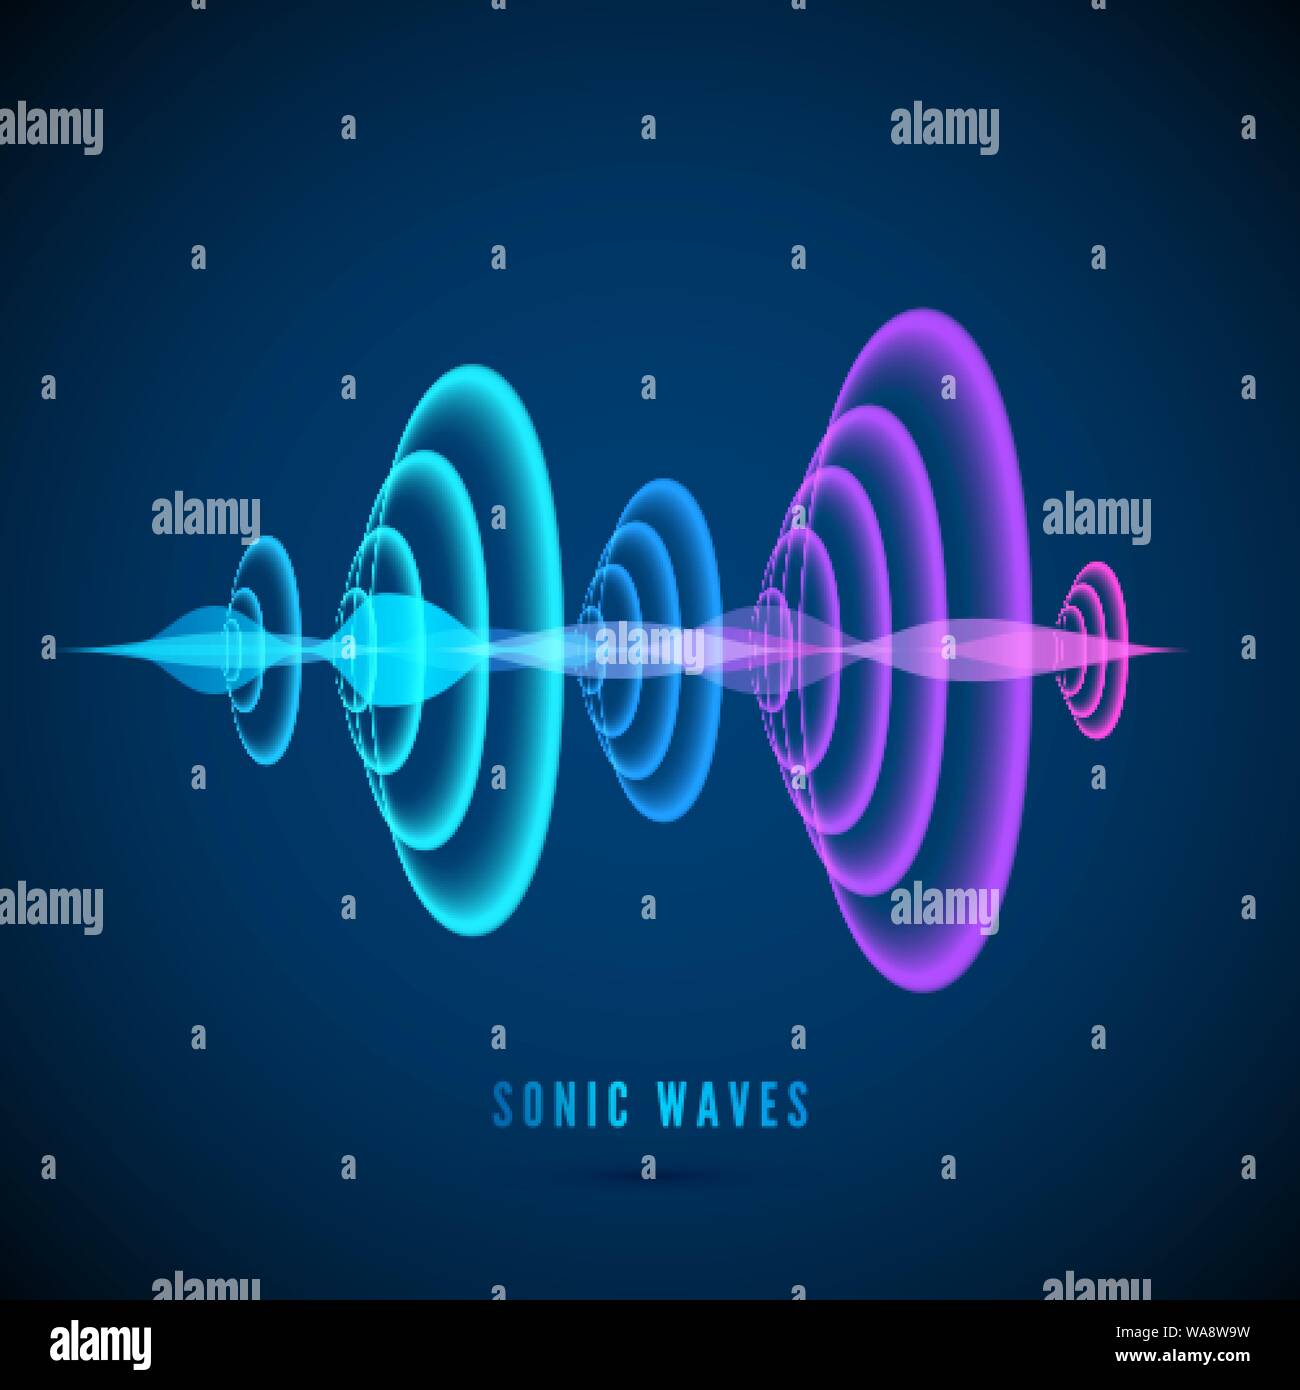 Résumé de l'onde sonore numérique couleur. Onde sinusoïdale sur fond sombre. Des ondes sonar radiale. Vector illustration Illustration de Vecteur